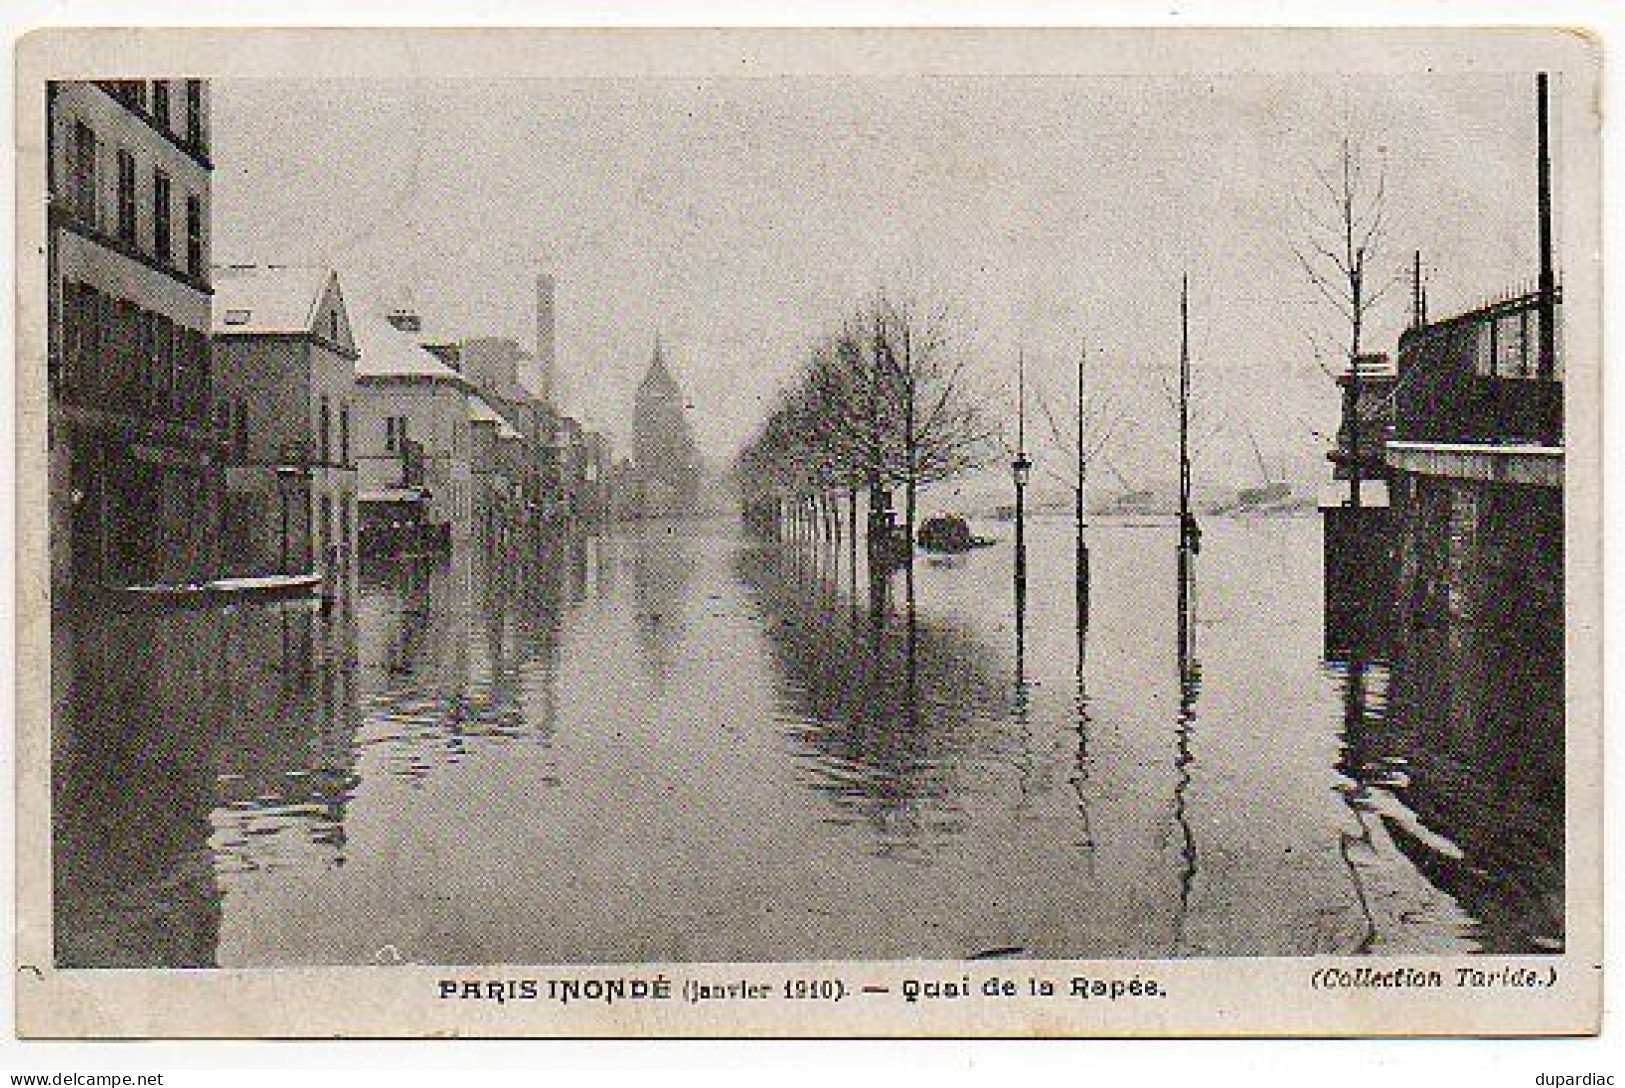 INONDATIONS : lot de 78 cartes, inondations à Villematier, Orléans, Nantes, Lyon, Moissac, Colombes, Paris, Issy, ...